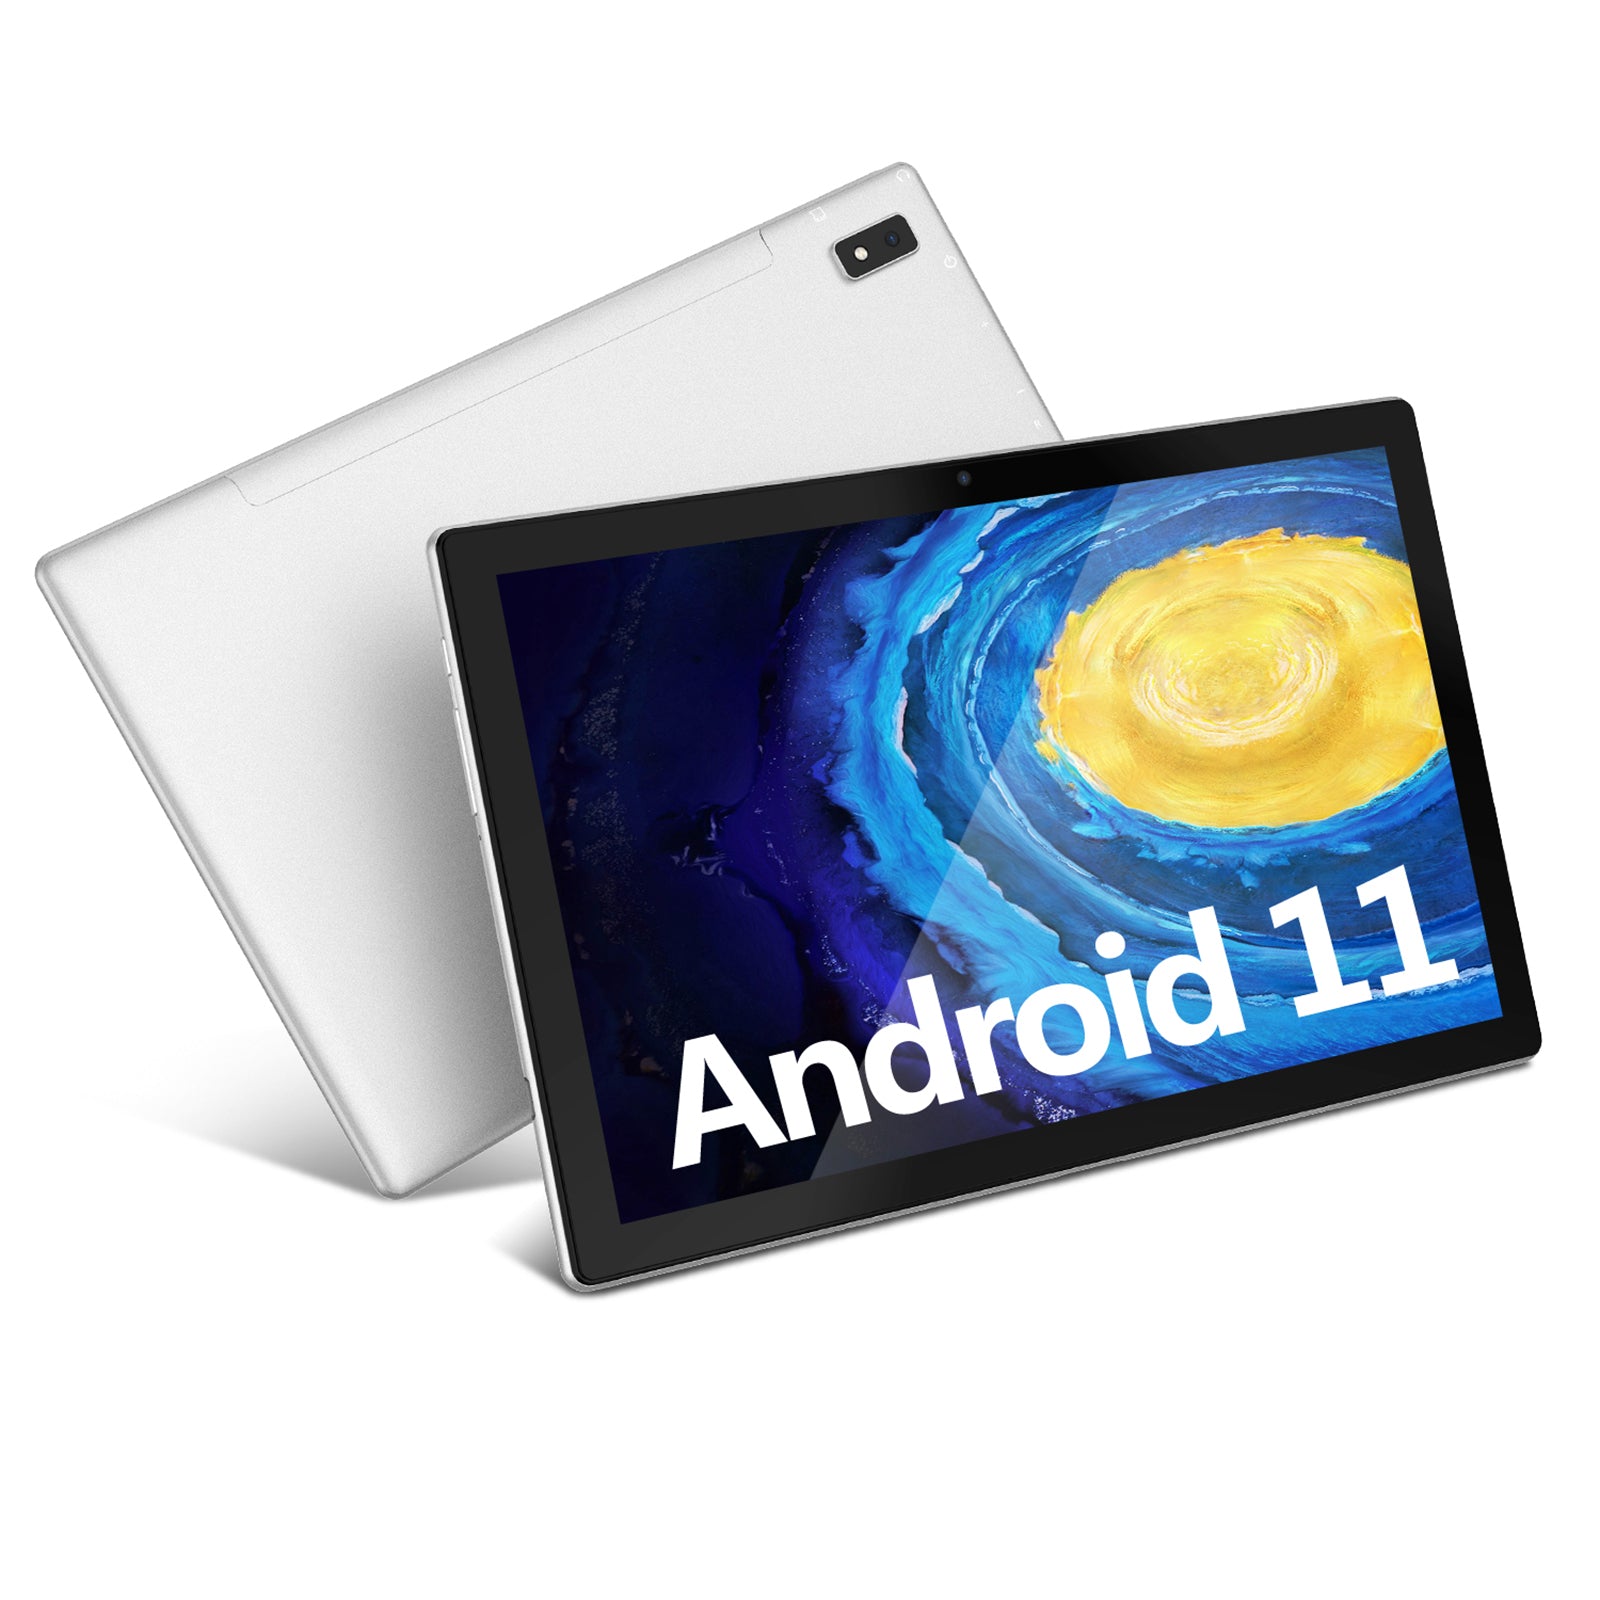 Plimpton Android タブレット 10 インチ - 8 コア プロセッサ、4GB RAM 64GB ストレージ、1.8M 長 USB-C ケーブル、Android 11、1920 x 1200 FHD IPS、13MP ソニー リア カメラ、6000mAh バッテリー、2.4G+5G WiFi タブレット PC